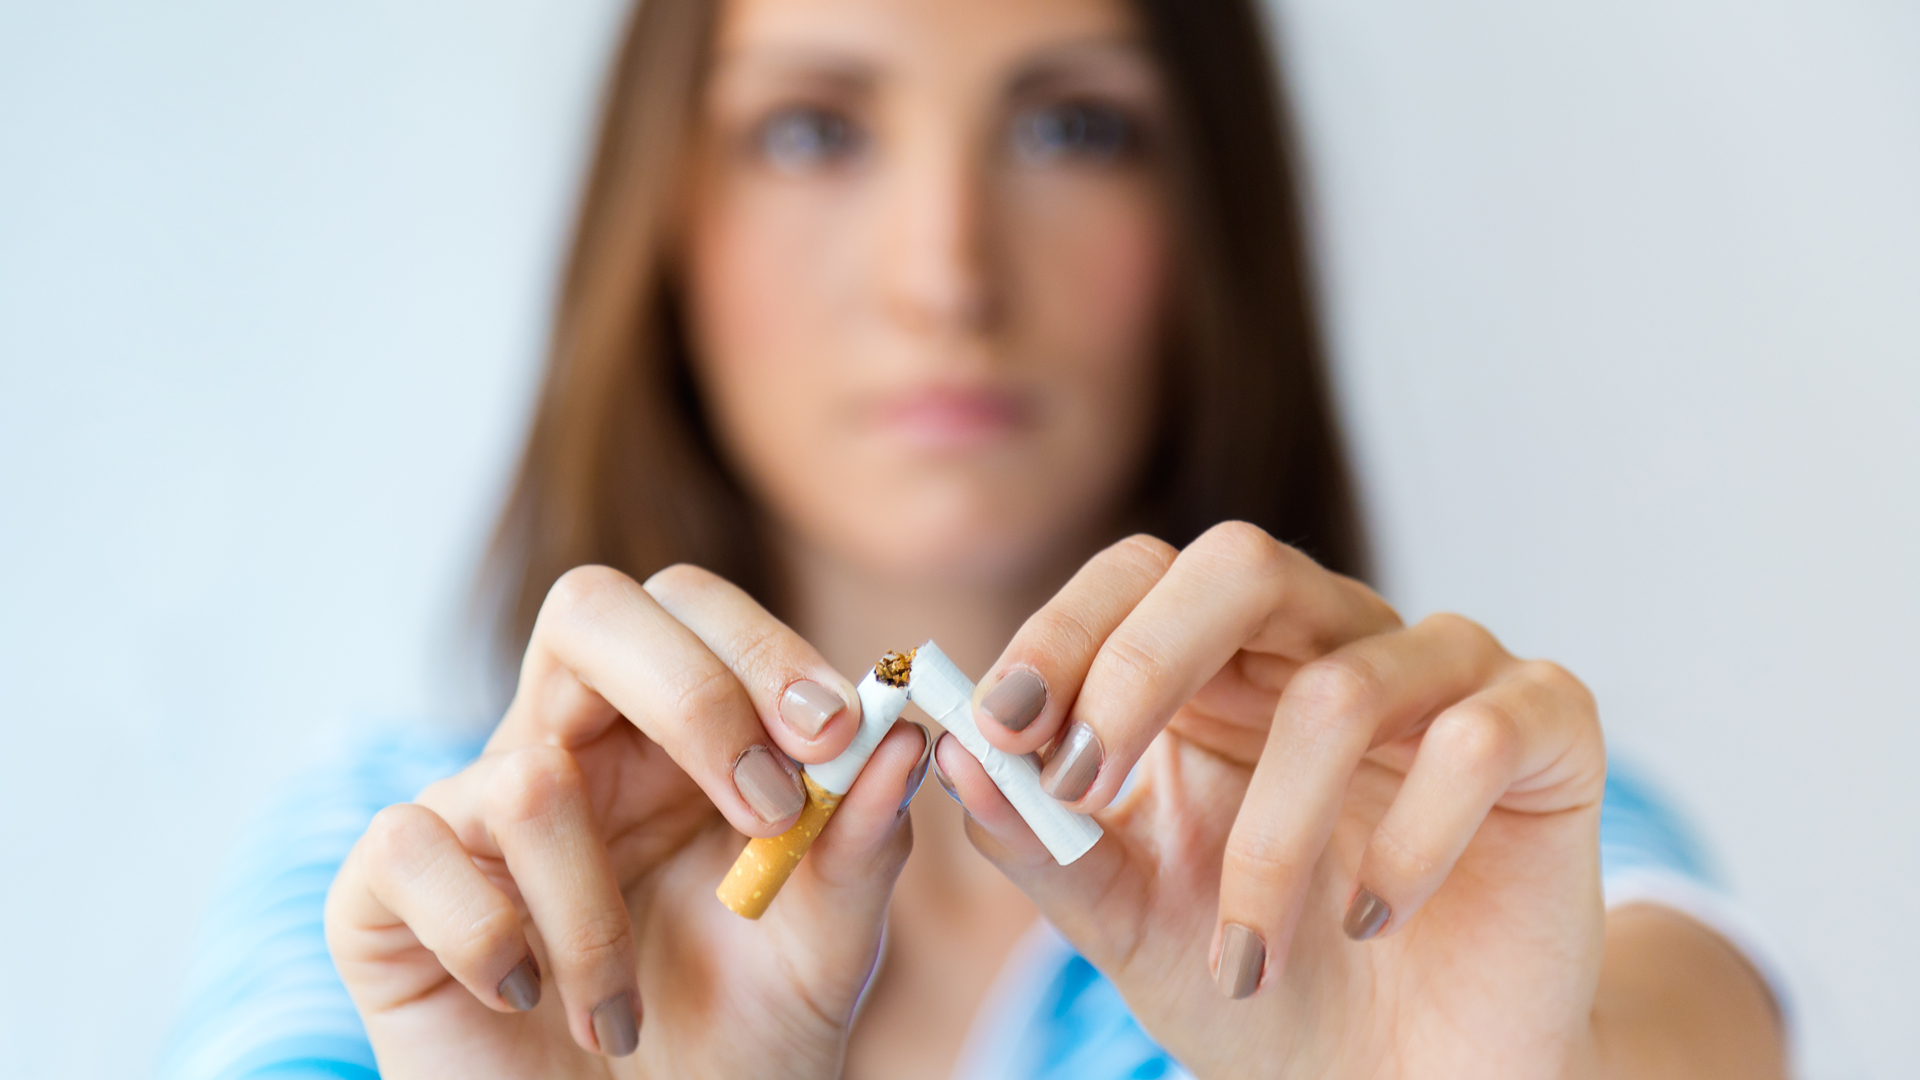 “De aquí a allí”: cómo dejar de fumar en cuatro claves, según un experto de la Clínica Mayo